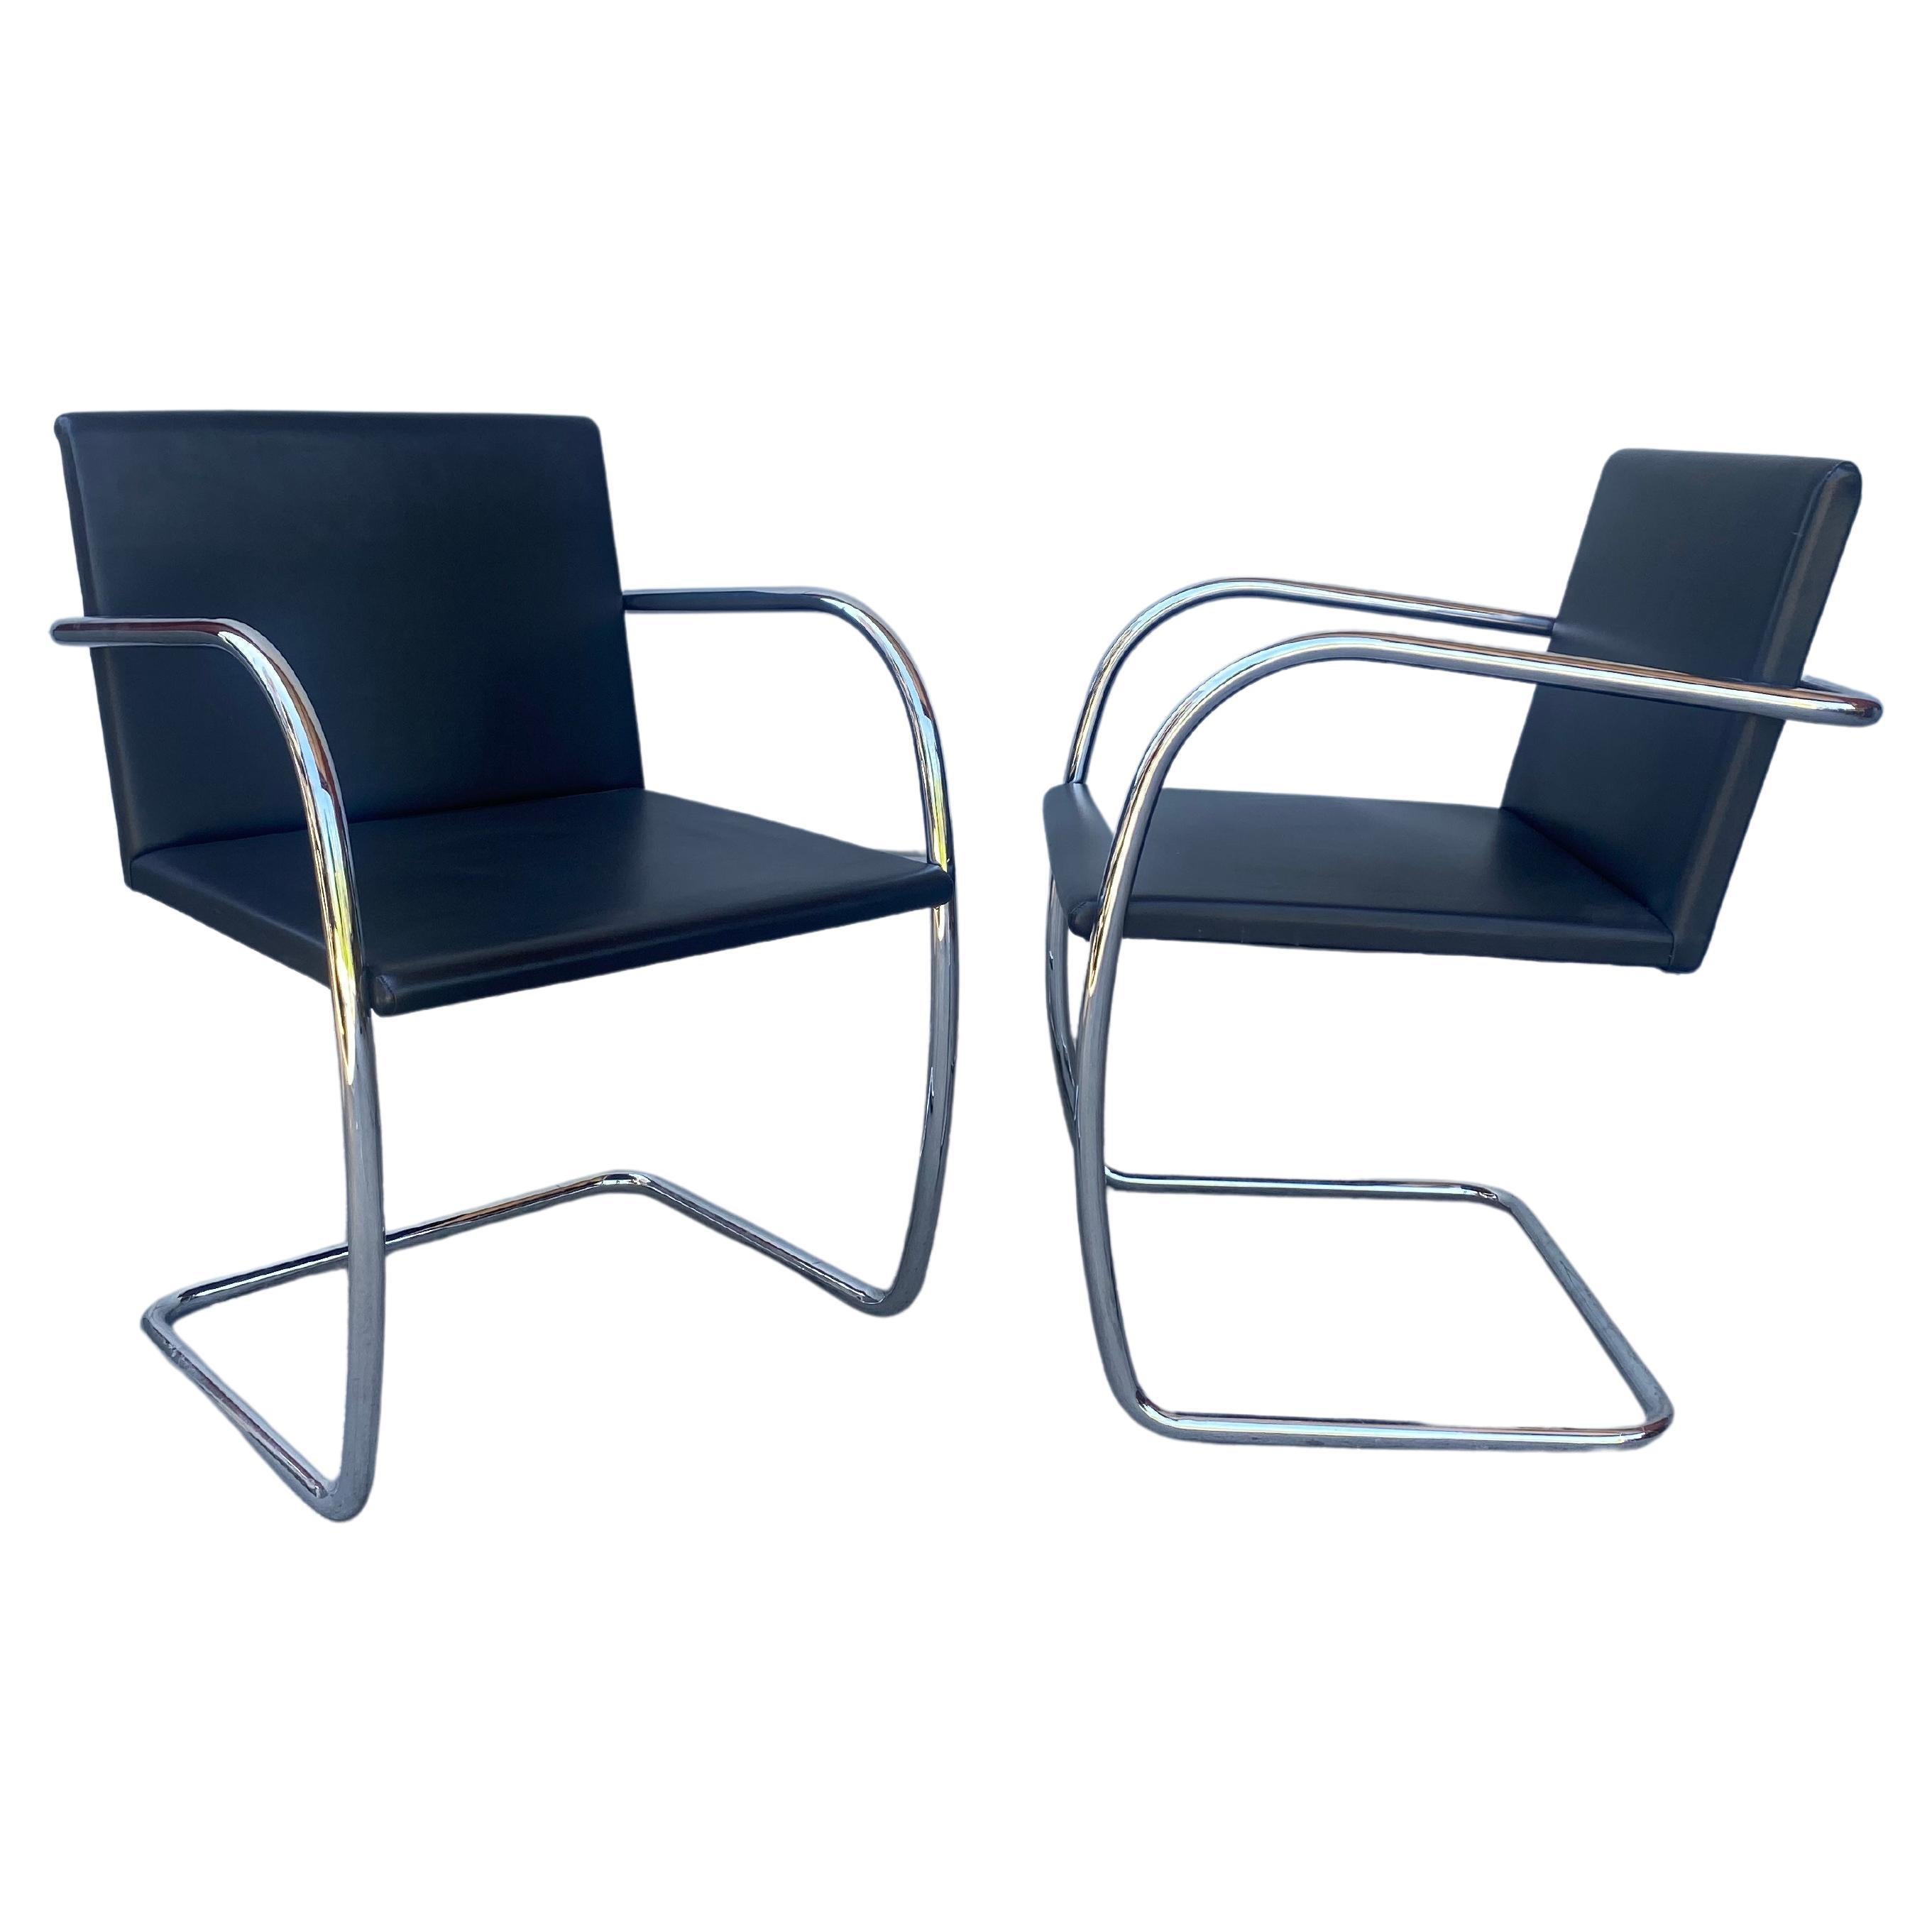 Ensemble classique de 6 chaises Brno, en cuir noir et chrome, fabriquées par kNOLL sTUDIO'S en vente